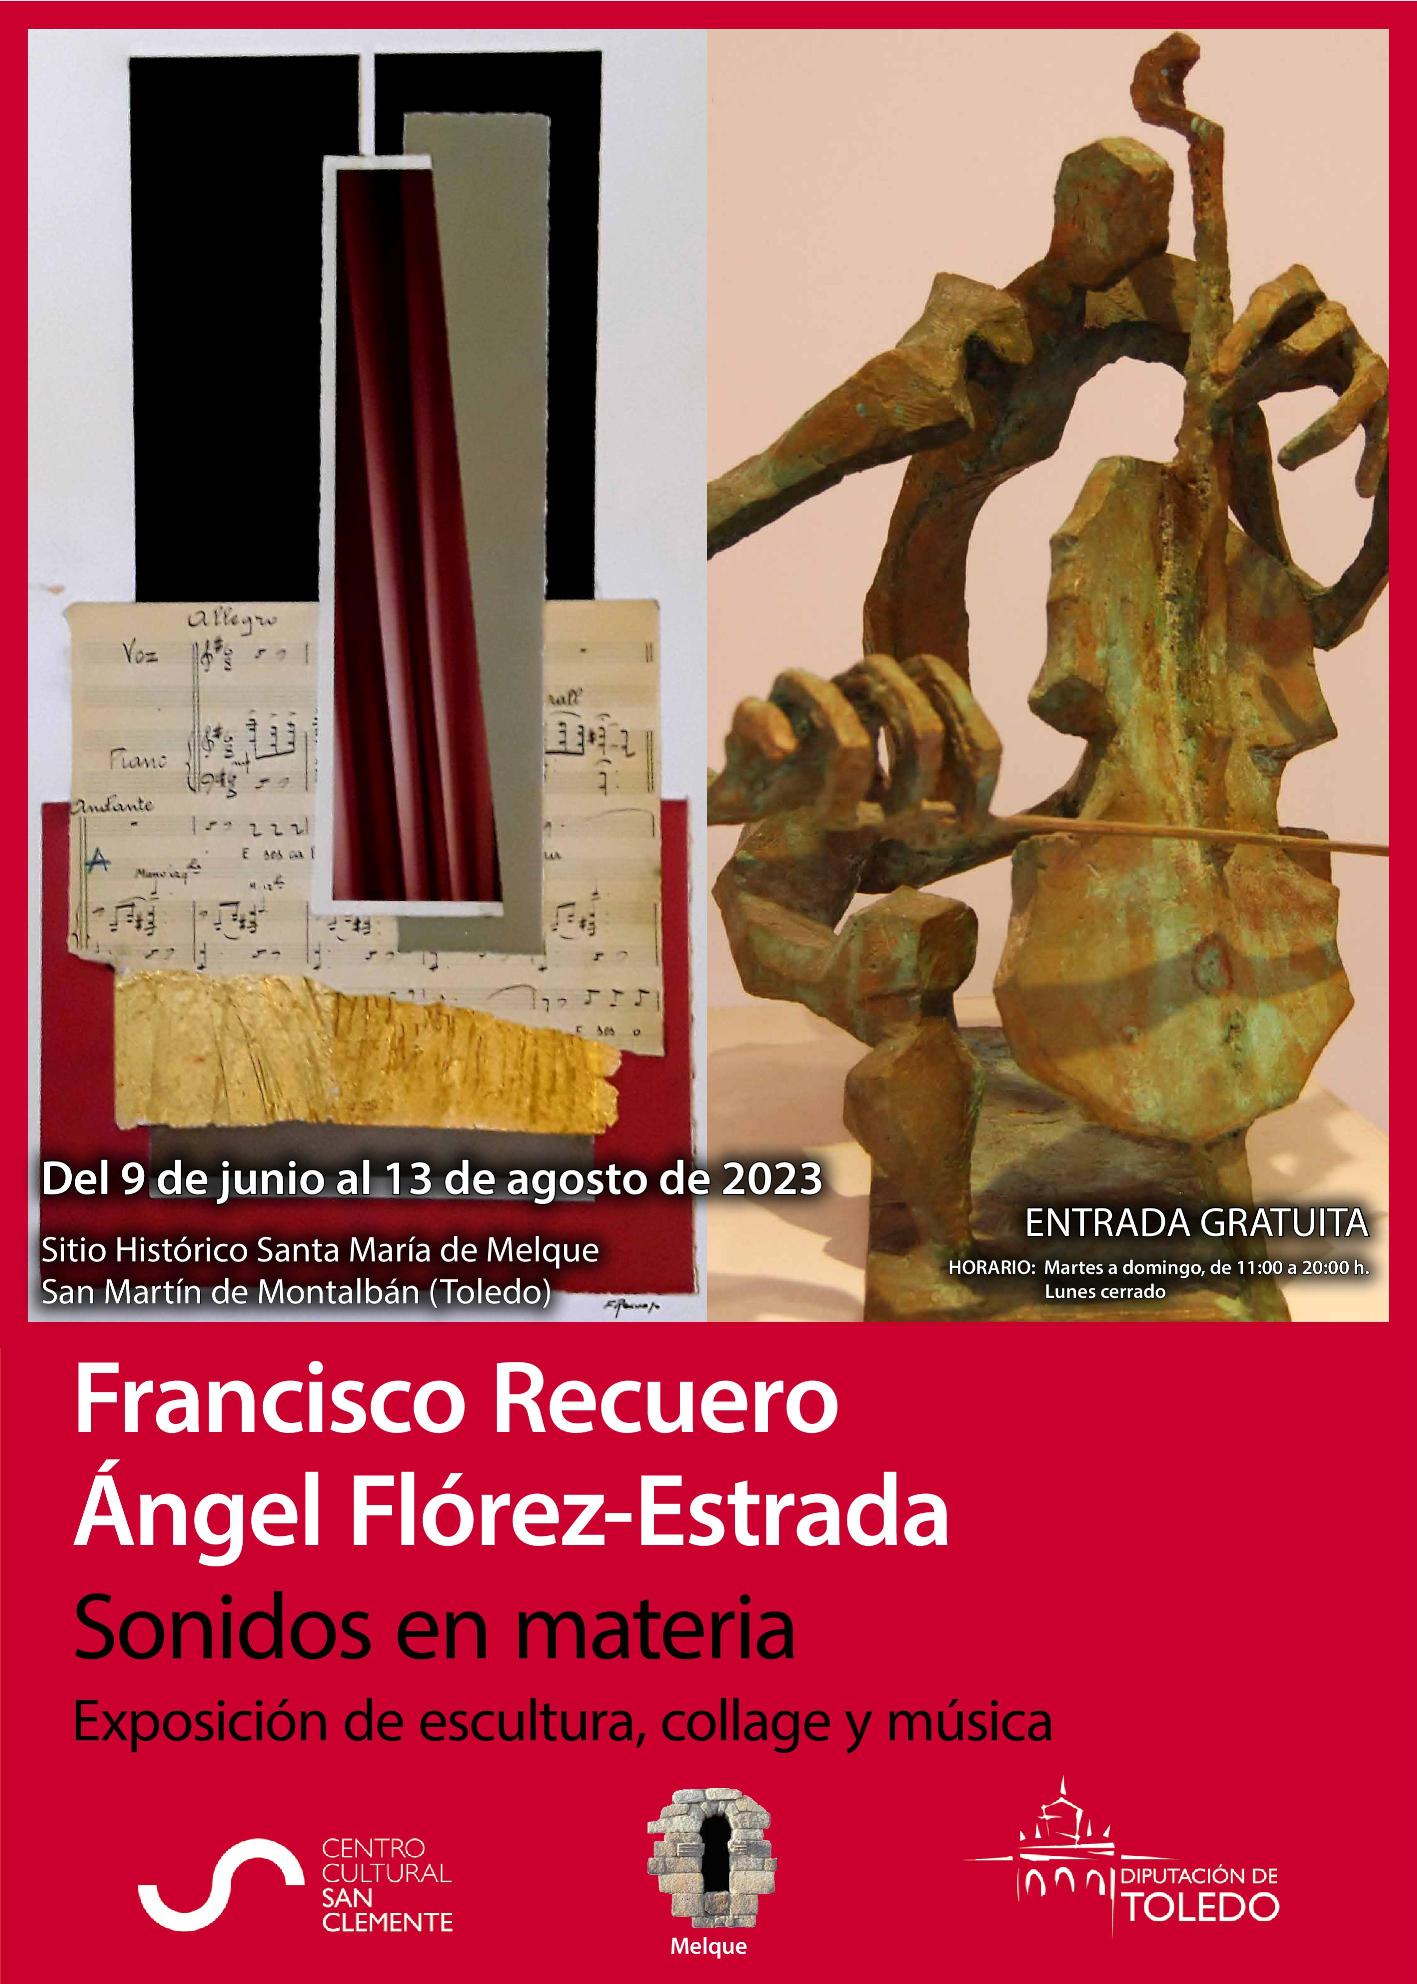 3. Fco Recuero y Ángel Flórez-Estrada